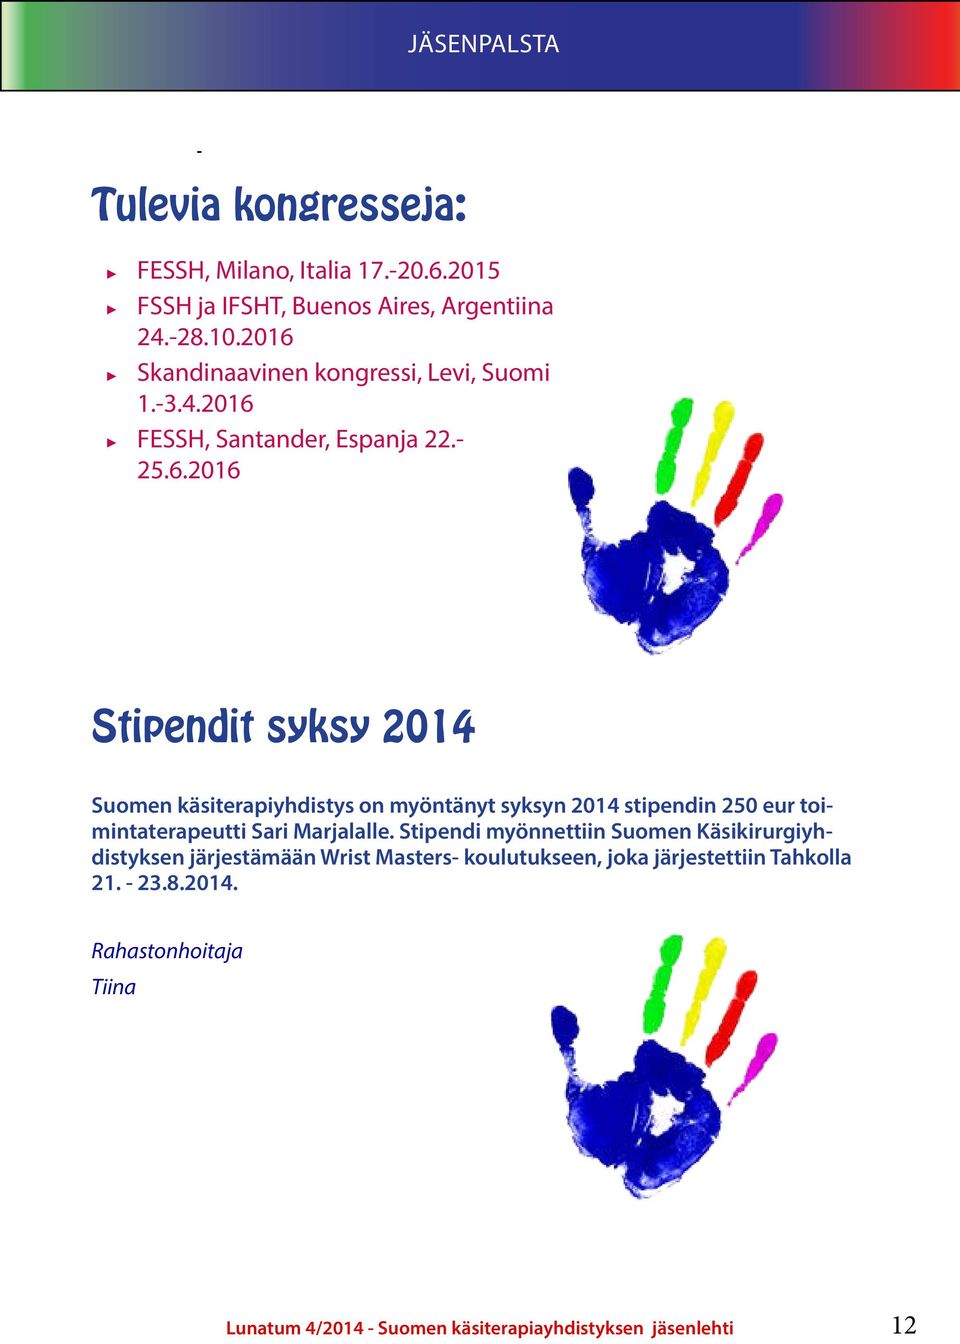 Stipendi myönnettiin Suomen Käsikirurgiyhdistyksen järjestämään Wrist Masters- koulutukseen, joka järjestettiin Tahkolla 21. - 23.8.2014.